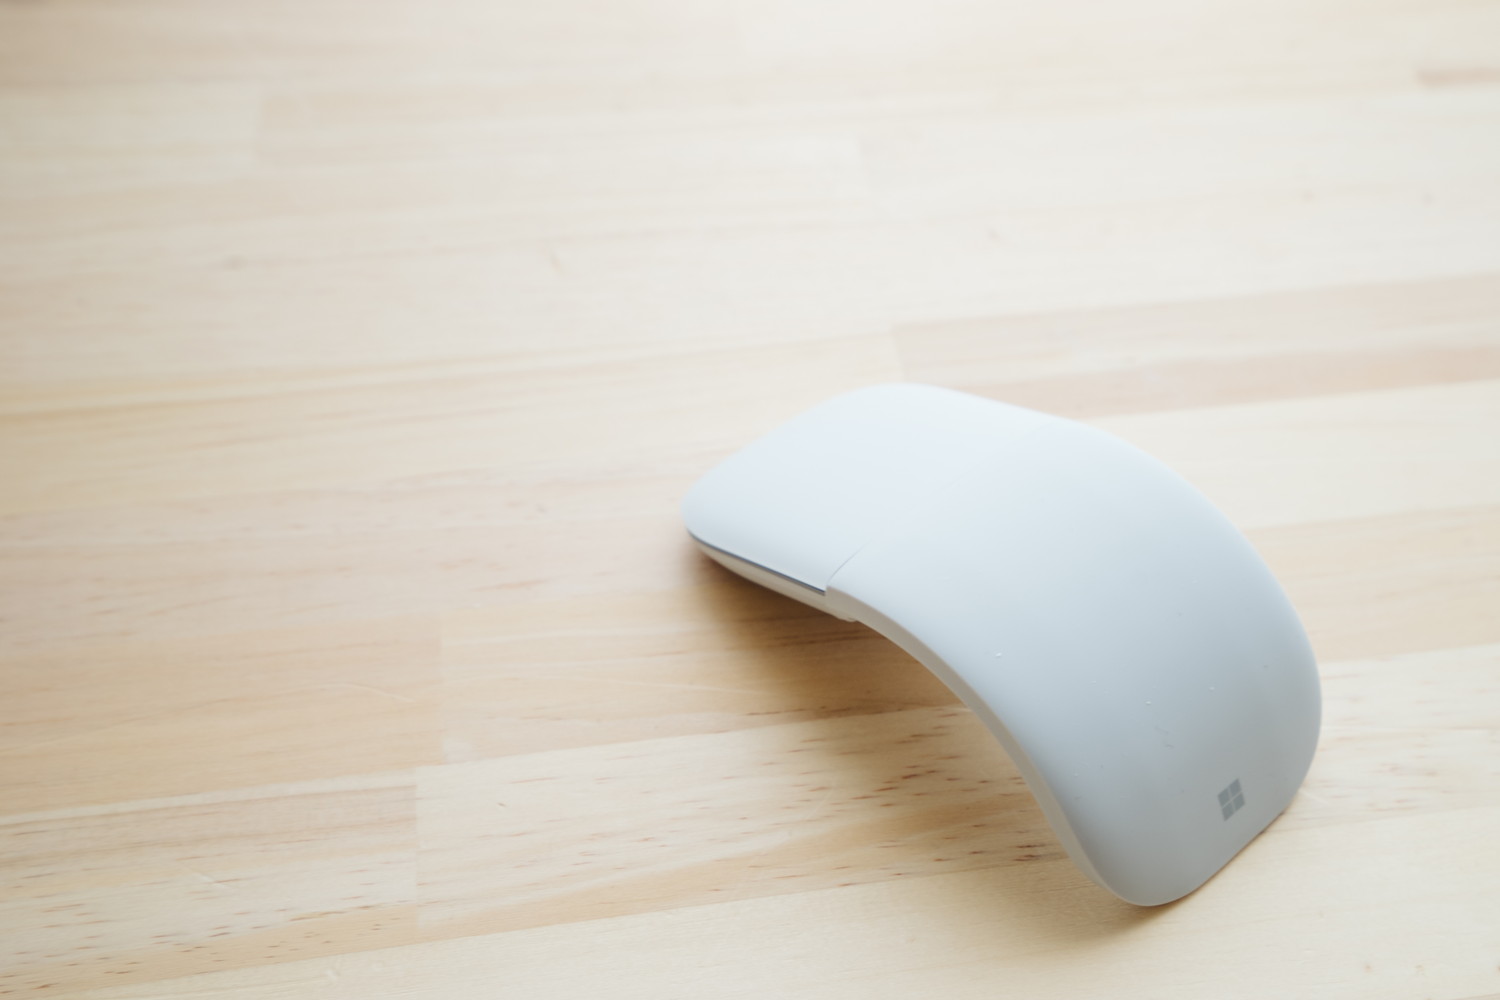 超薄型で軽いbluetoothマウス Surface Arc Mouse レビュー Gpd Pocket 用にもオススメ